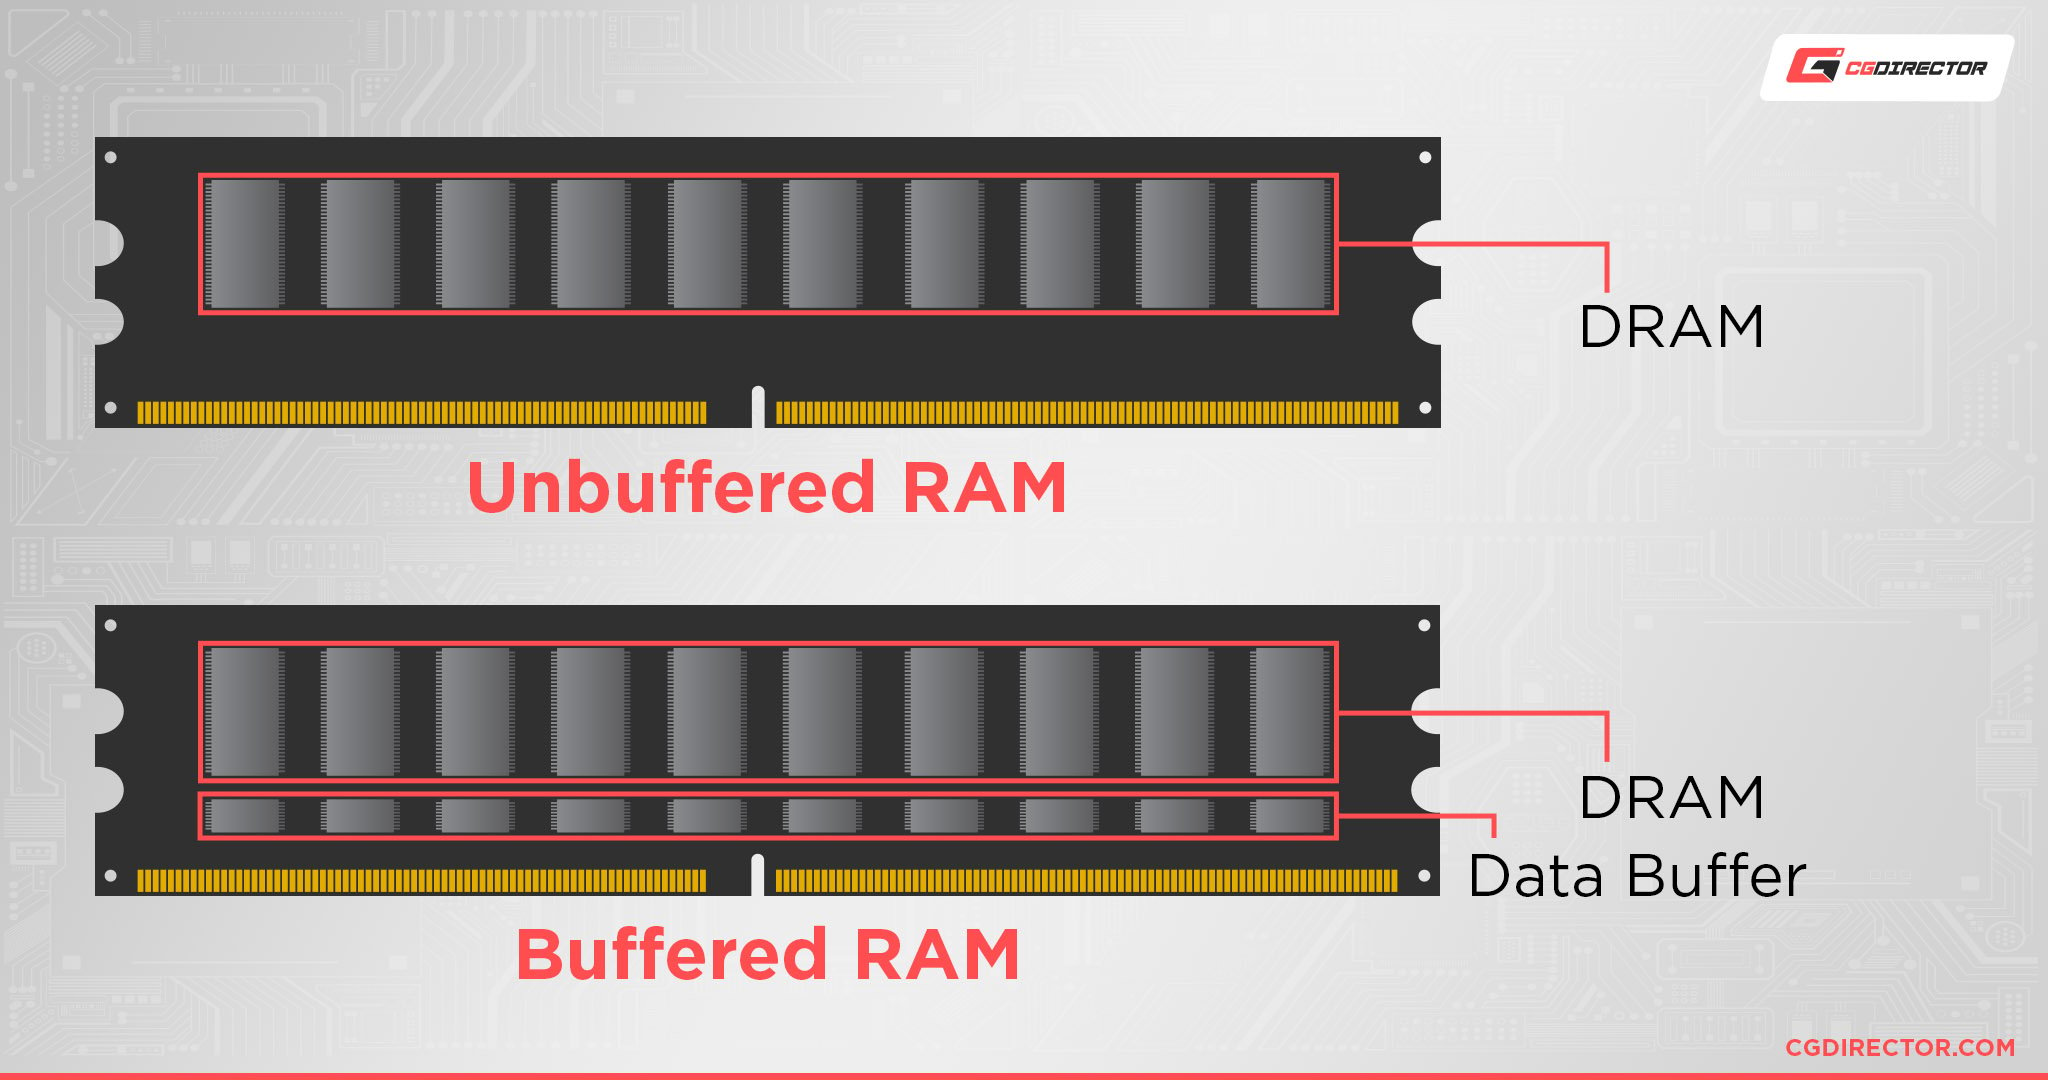 Buffered vs Unbuffered RAM